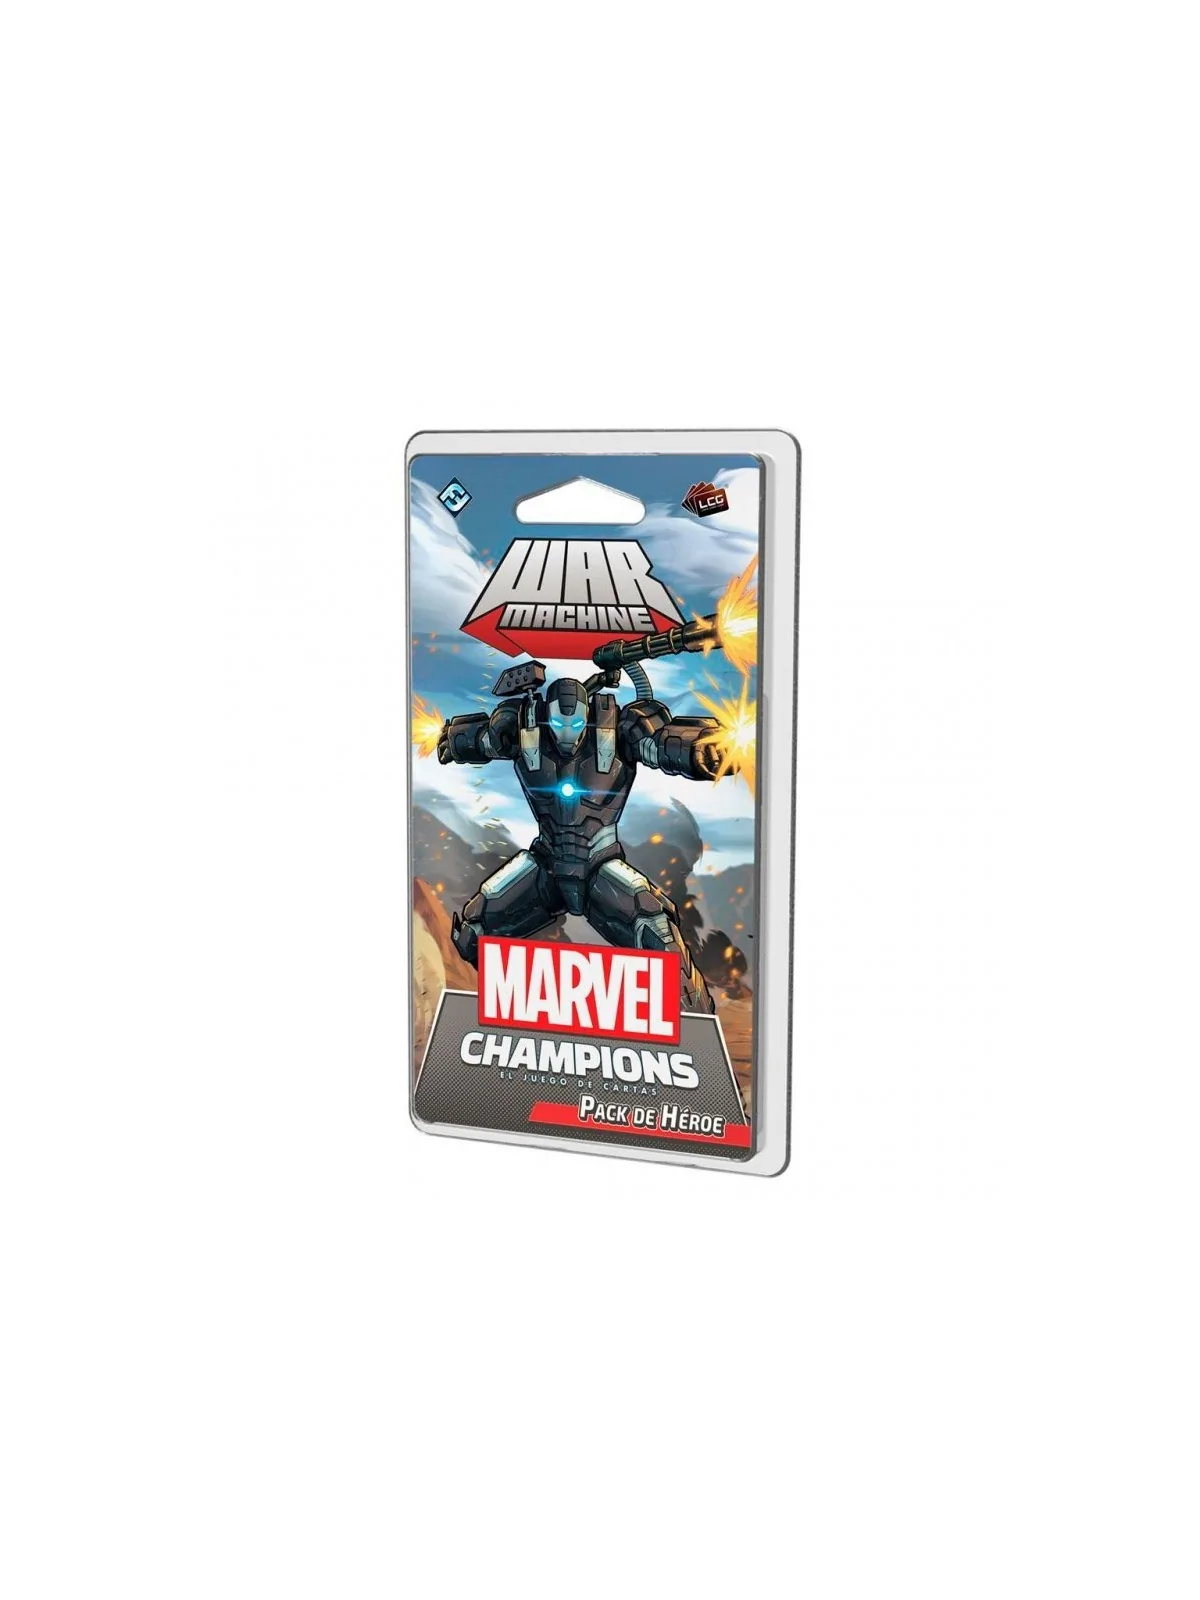 Comprar Marvel Champions: War Machine barato al mejor precio 14,10 € d